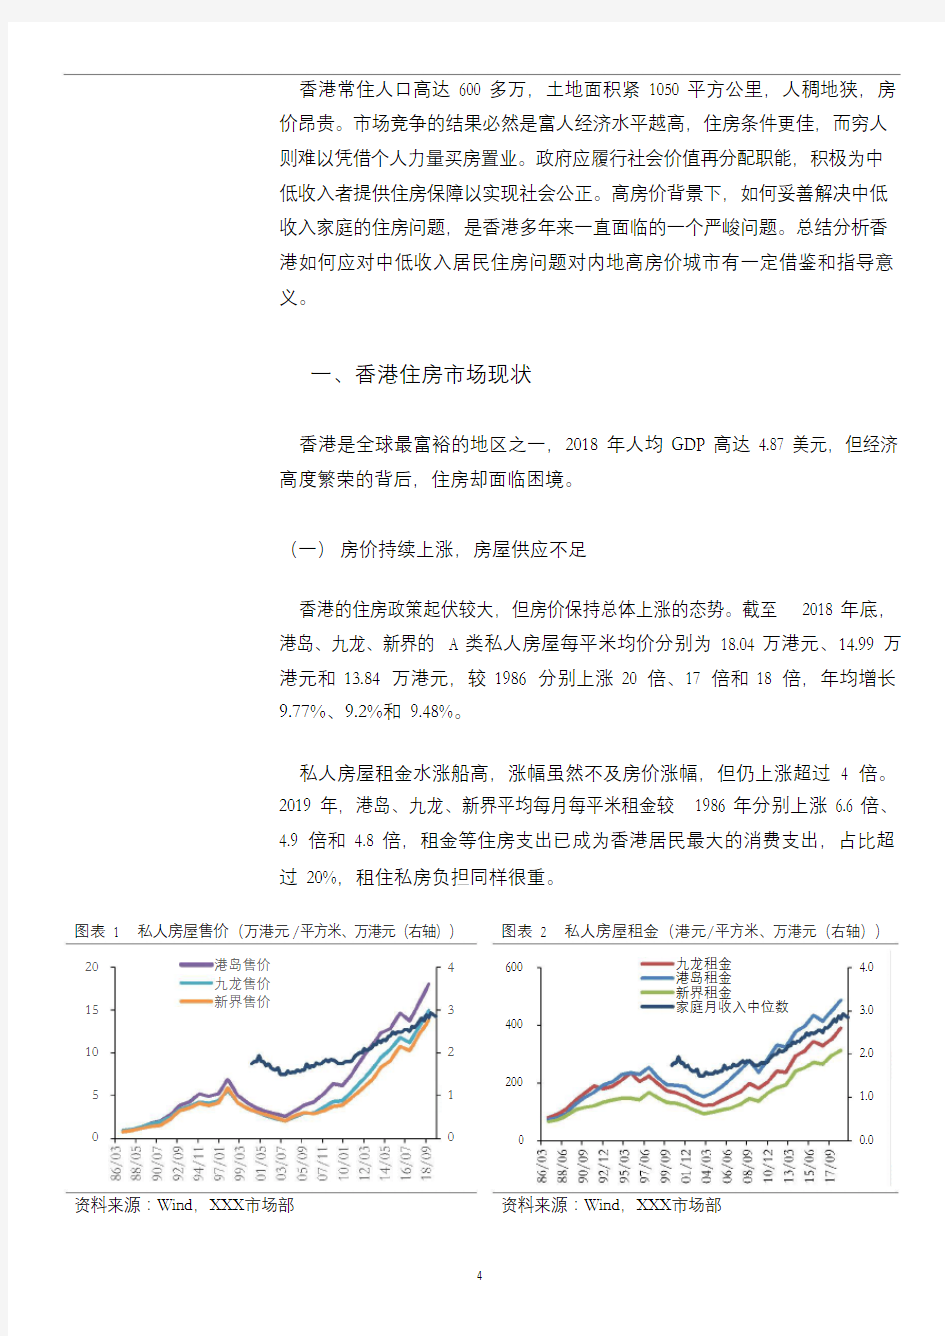 香港公共住房市场分析报告